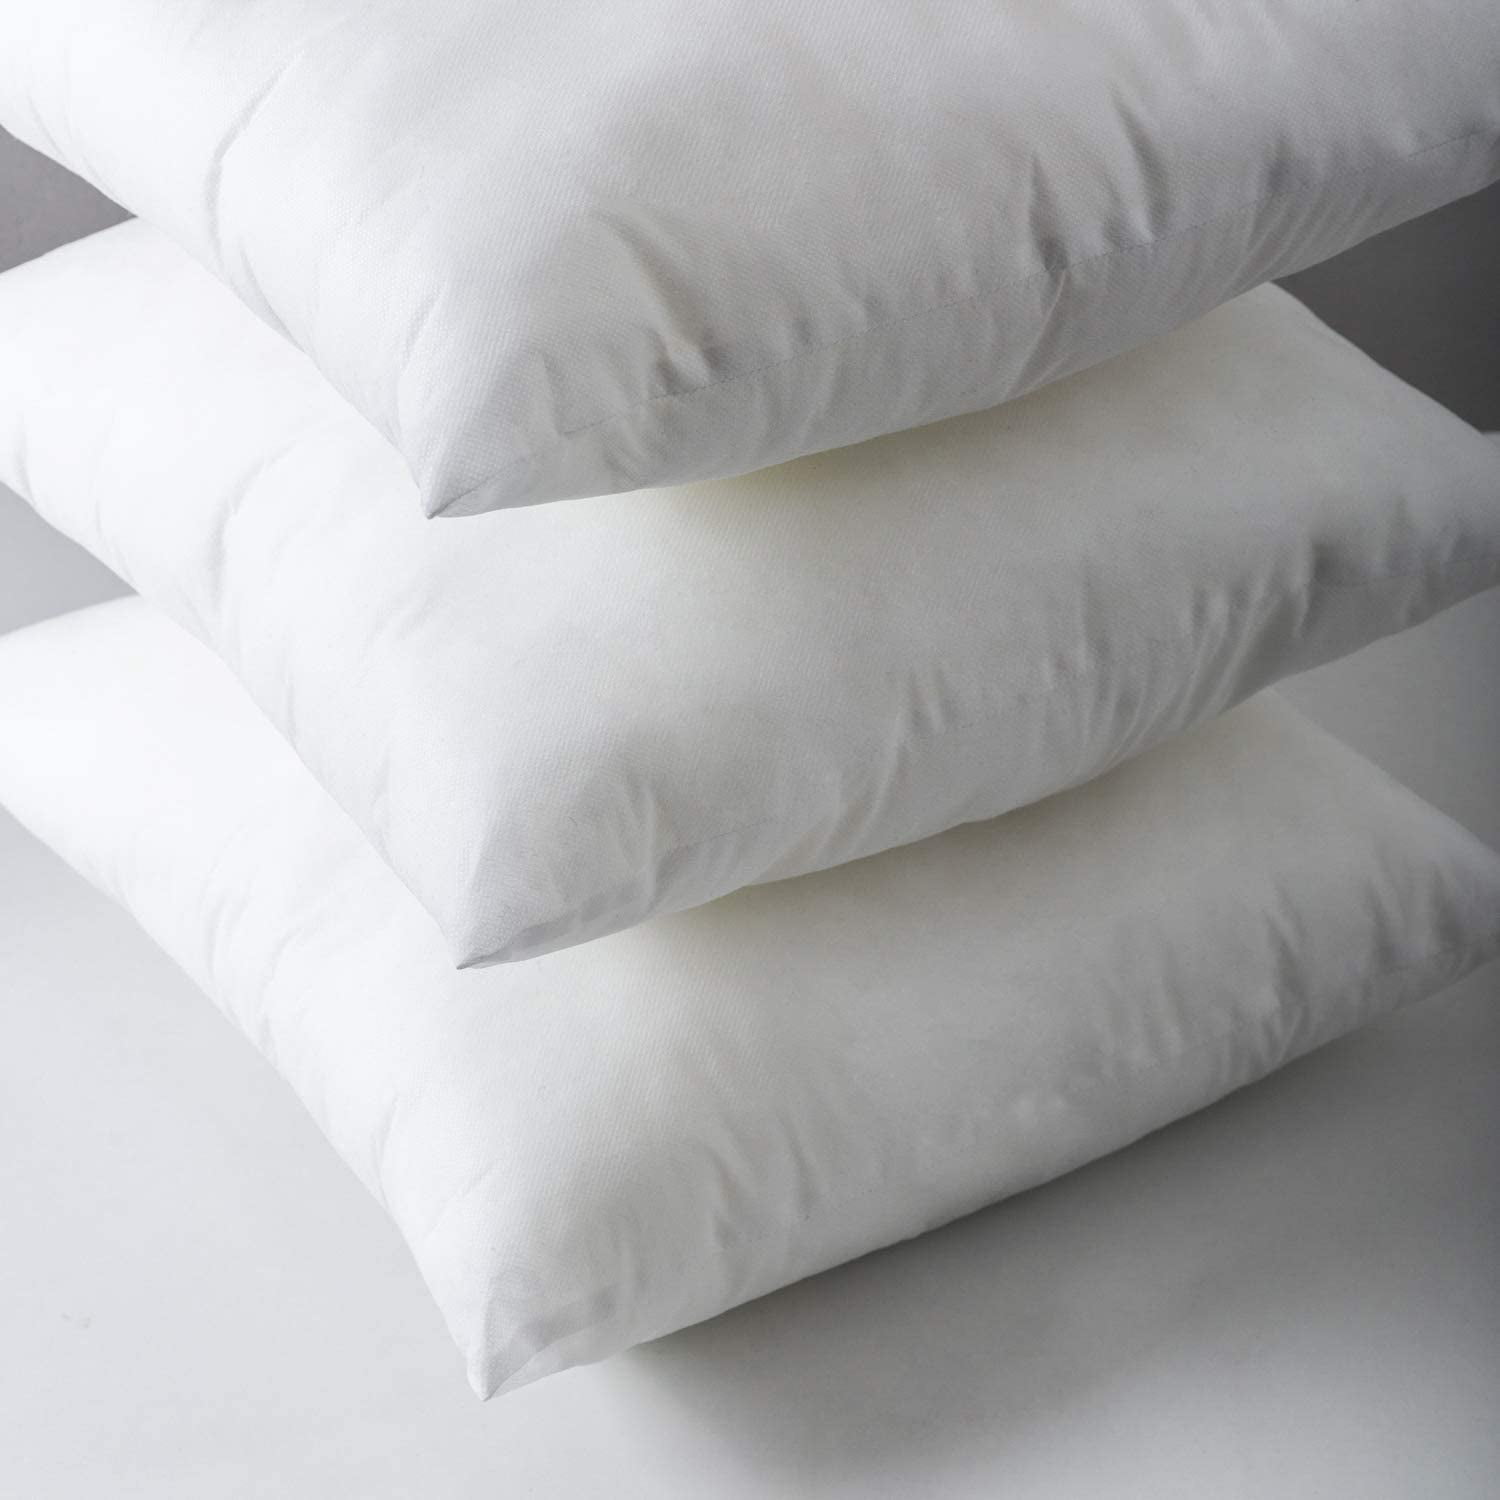 xuan dian 18 x 18 Pillow Insert,Throw Pillow Insert, 18 x 18 Set of 2 Down  Alternative Polyester Squ…See more xuan dian 18 x 18 Pillow Insert,Throw